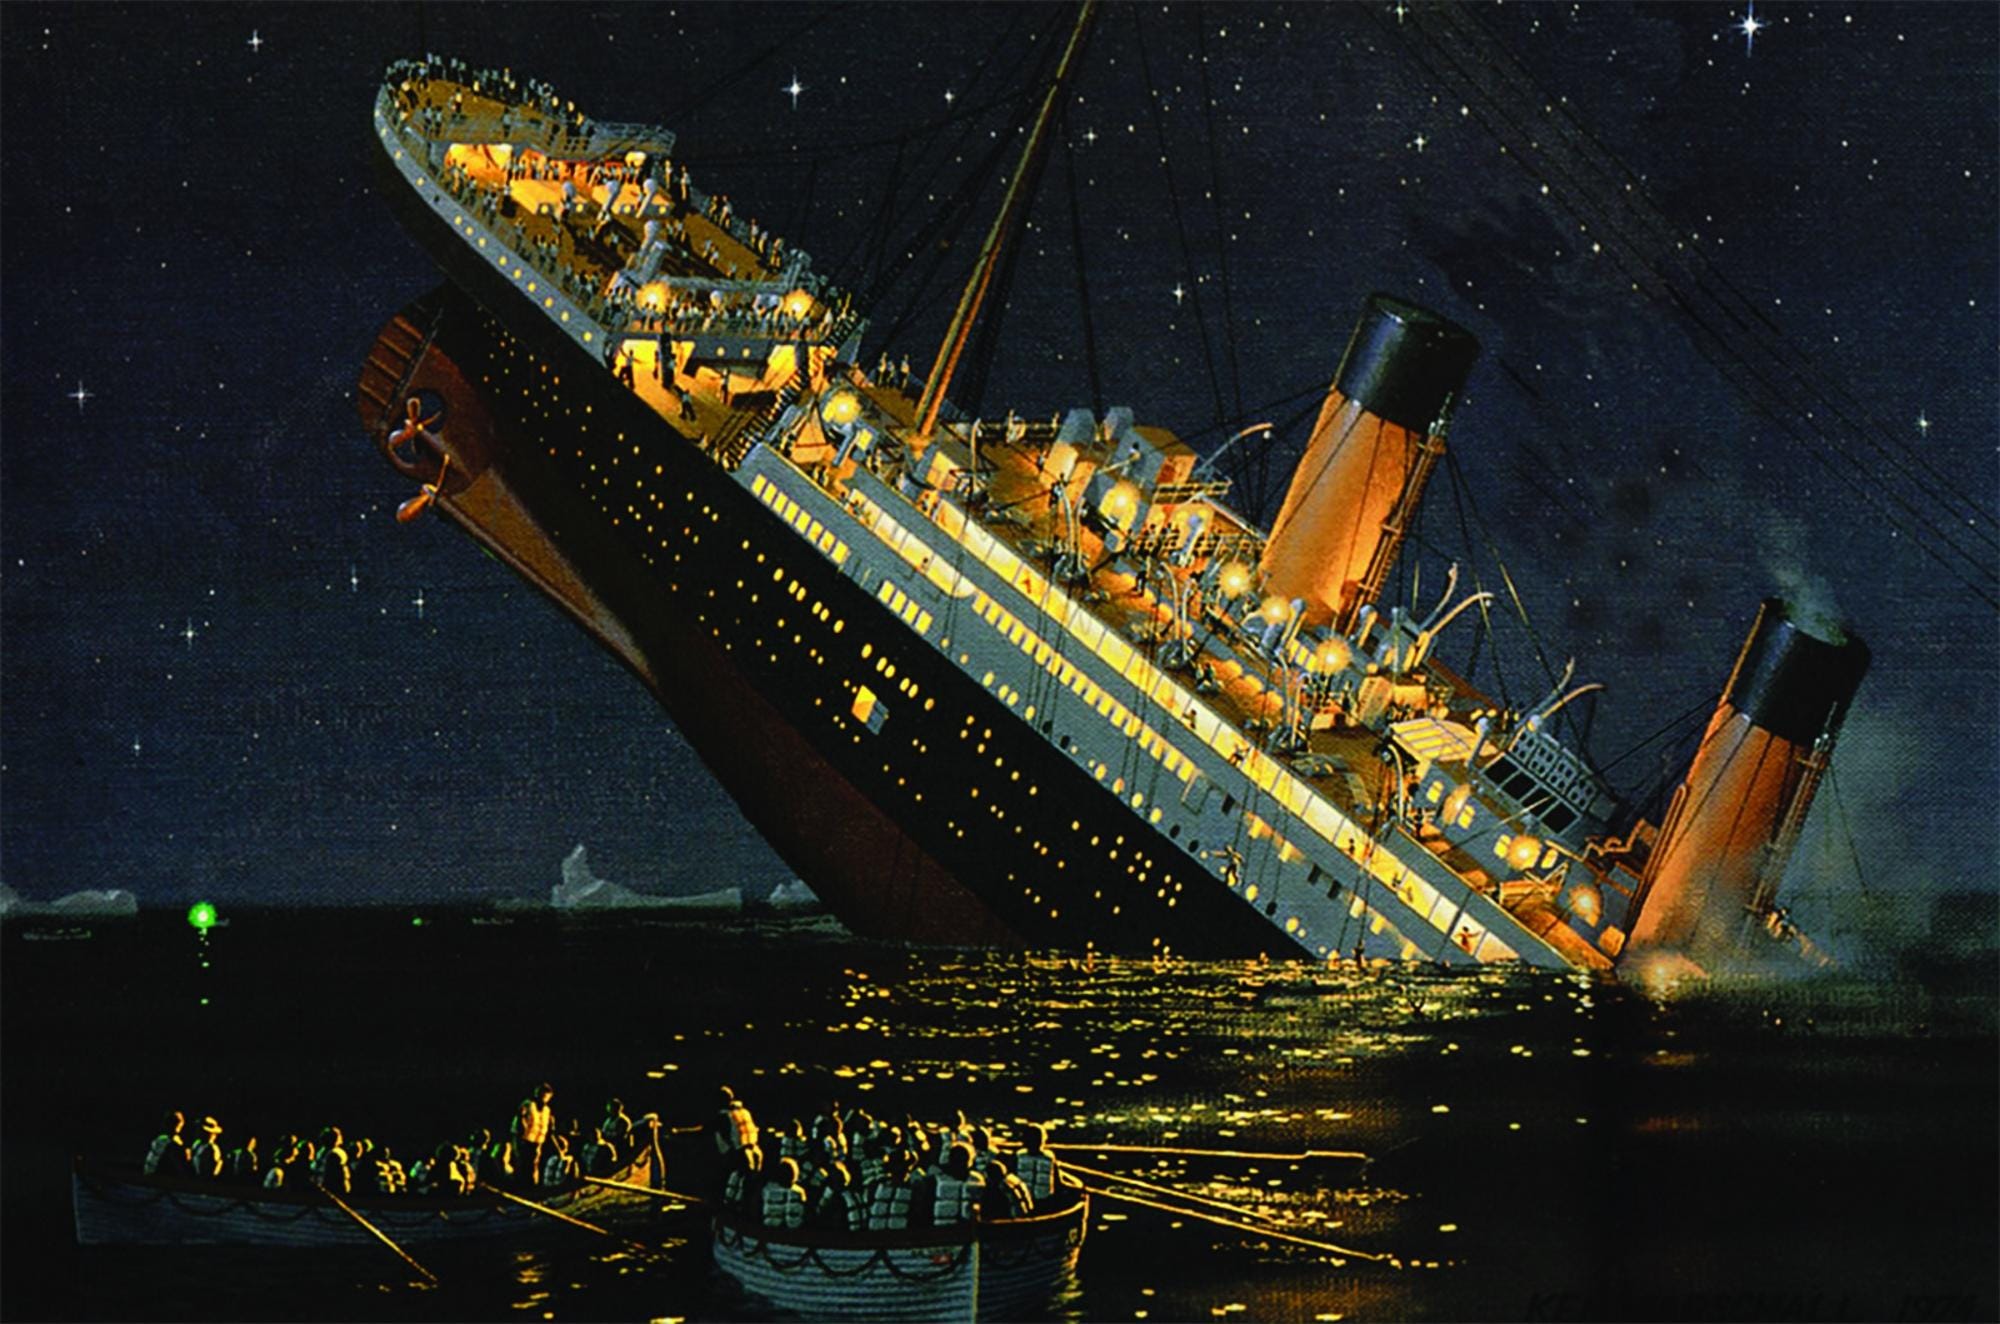 Titanic Verisetinin Görselleştirilmesi | by Jiyan Aytek | Data Runner | Medium